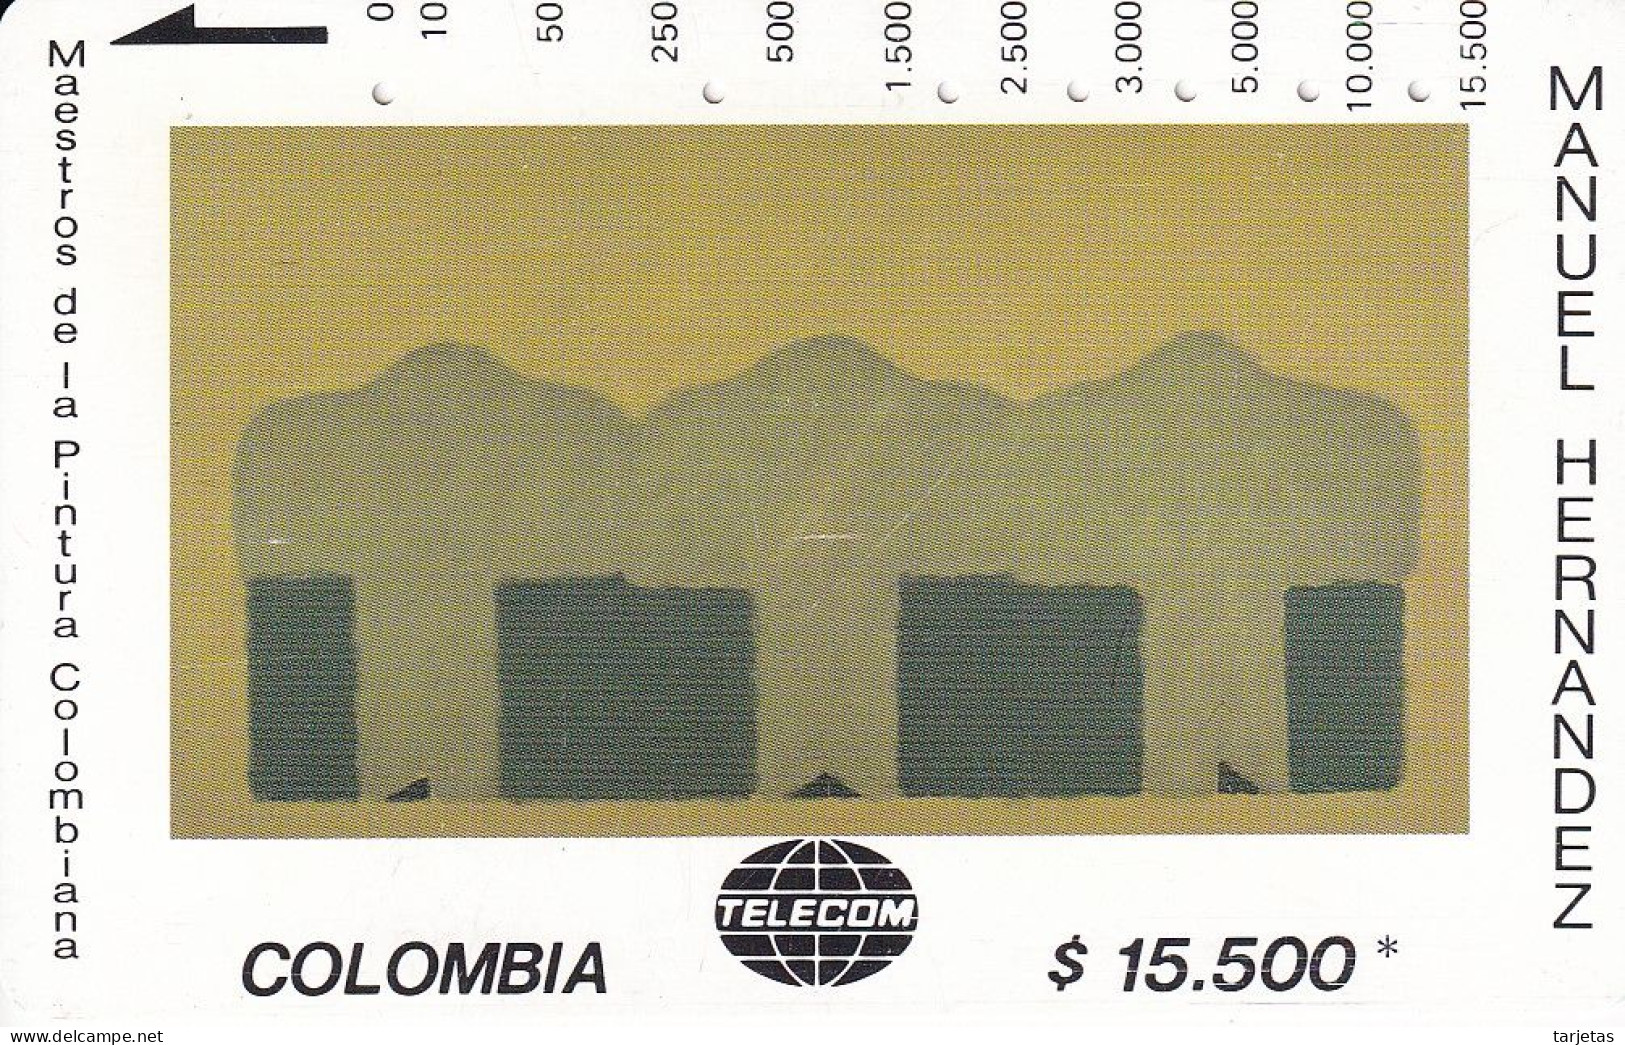 TARJETA DE COLOMBIA DE TELECOM DE $15500 MAESTROS DE LA PINTURA (MANUEL HERNANDEZ) SECUENCIA ALINEADA - Colombia